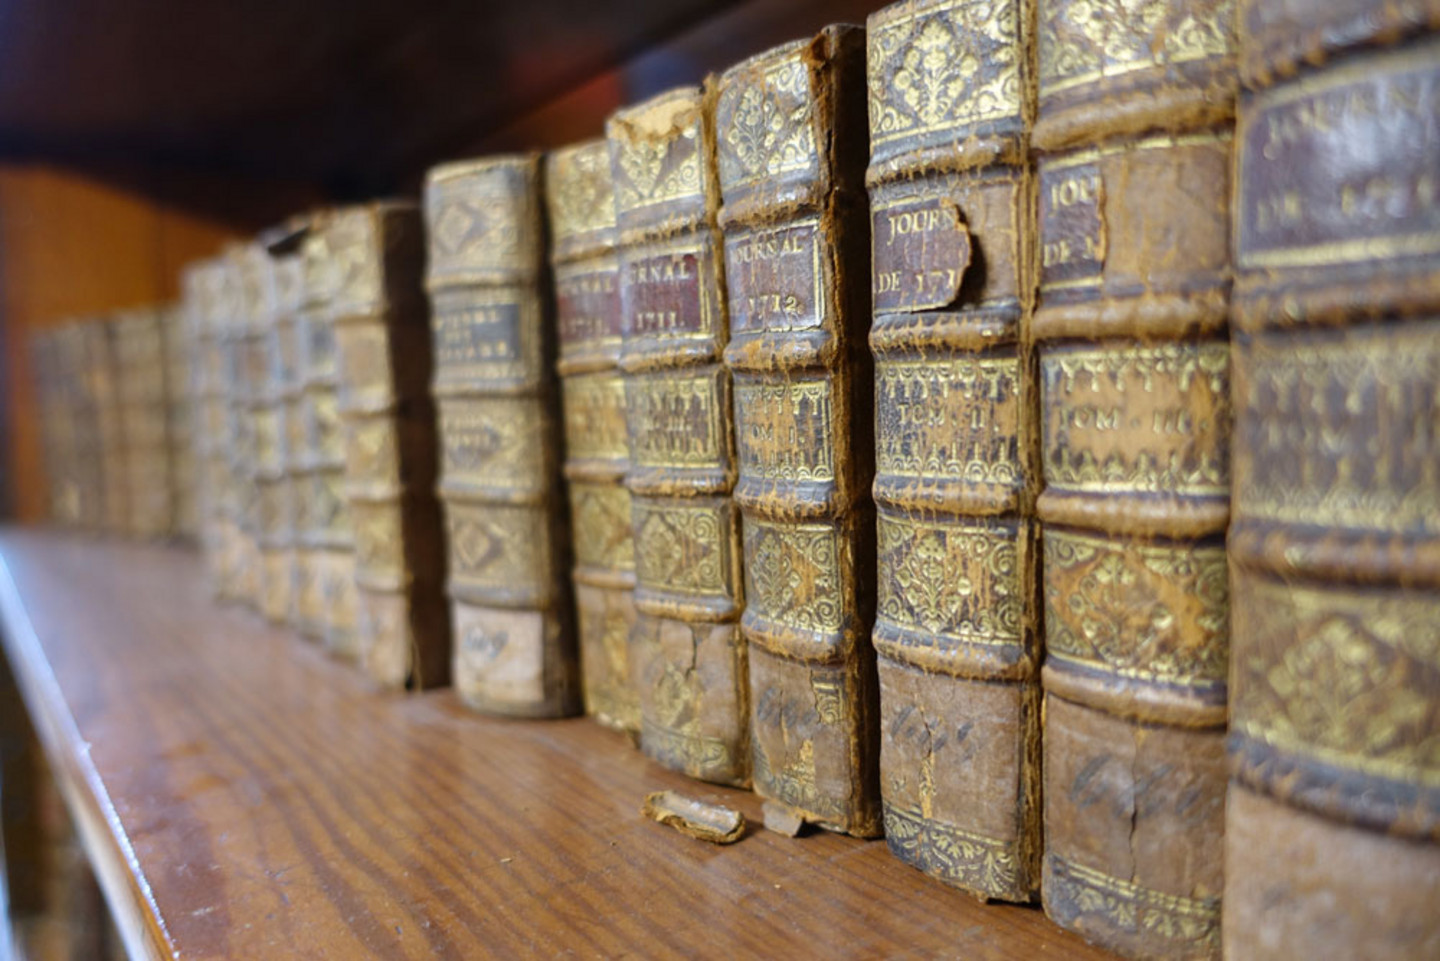 Detailansicht eines Bücherregals mit über 20 alten Bänden, die alle einen einheitlichen Ledereinband mit Goldprägung haben.